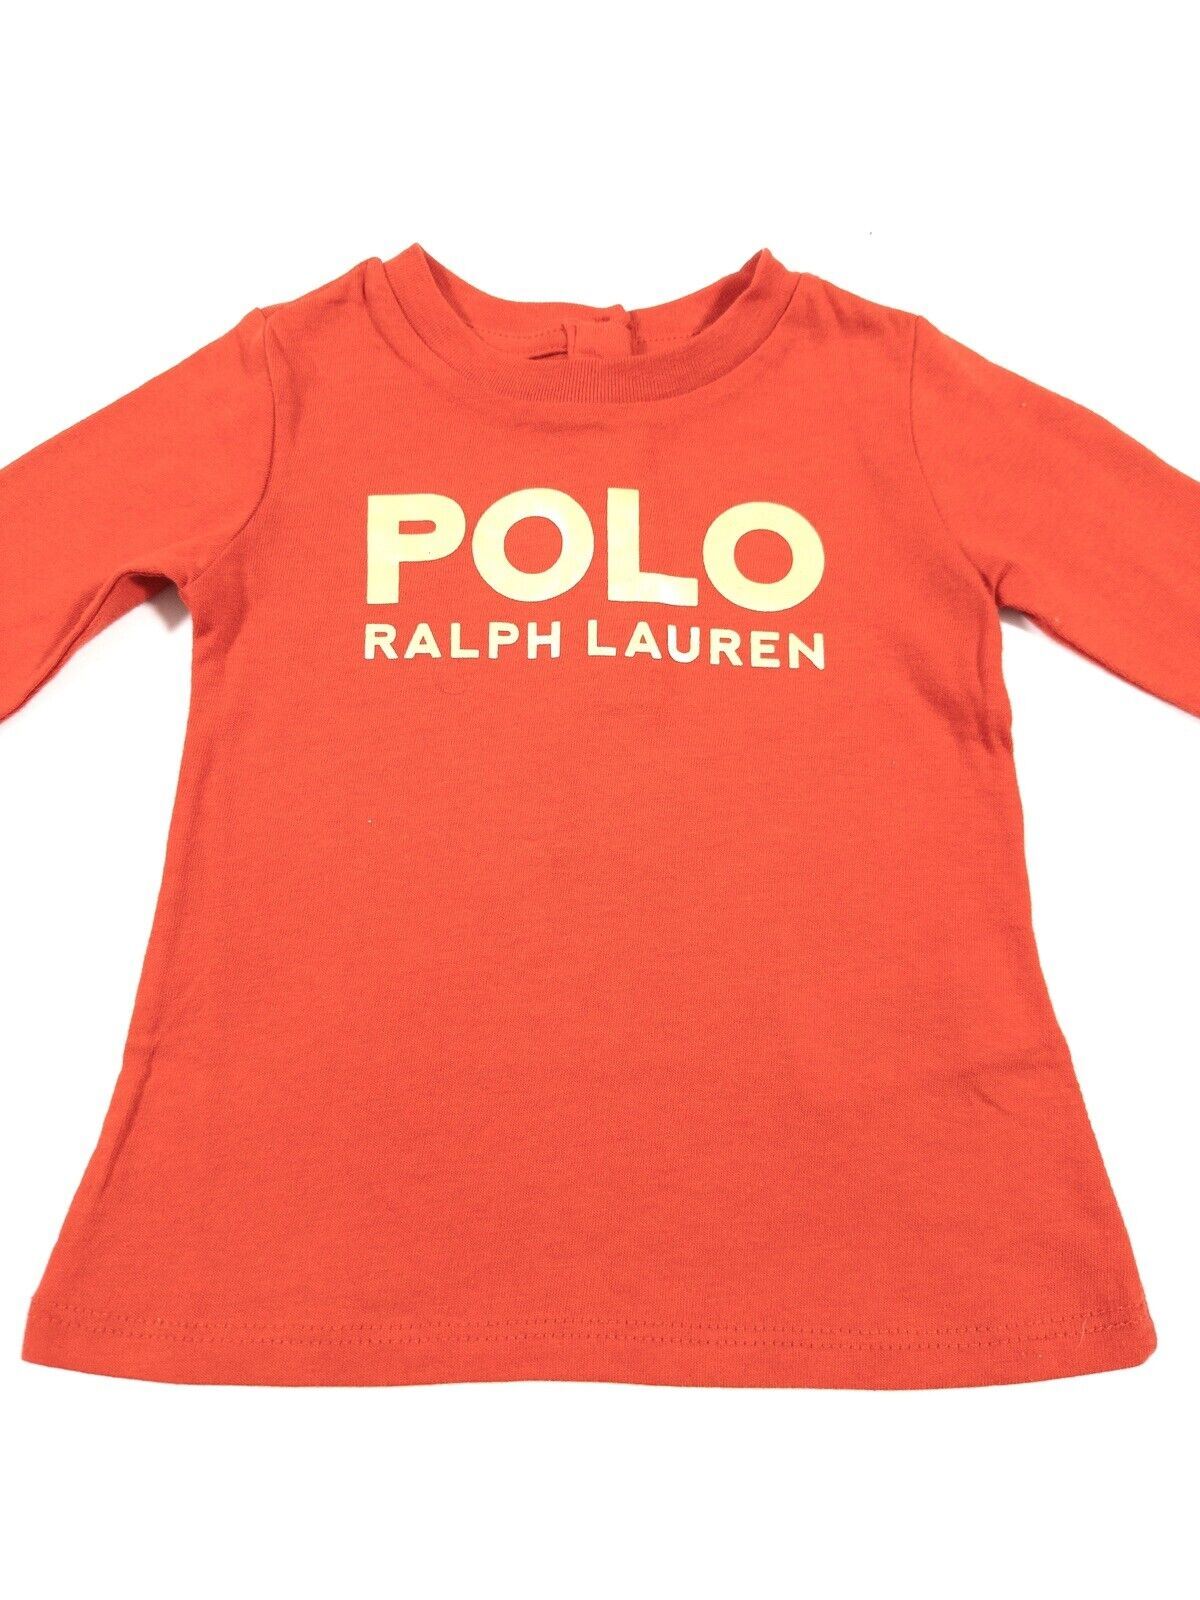 POLO RALPH LAUREN Kids Boys Long Sleeve Top Size 9 Months